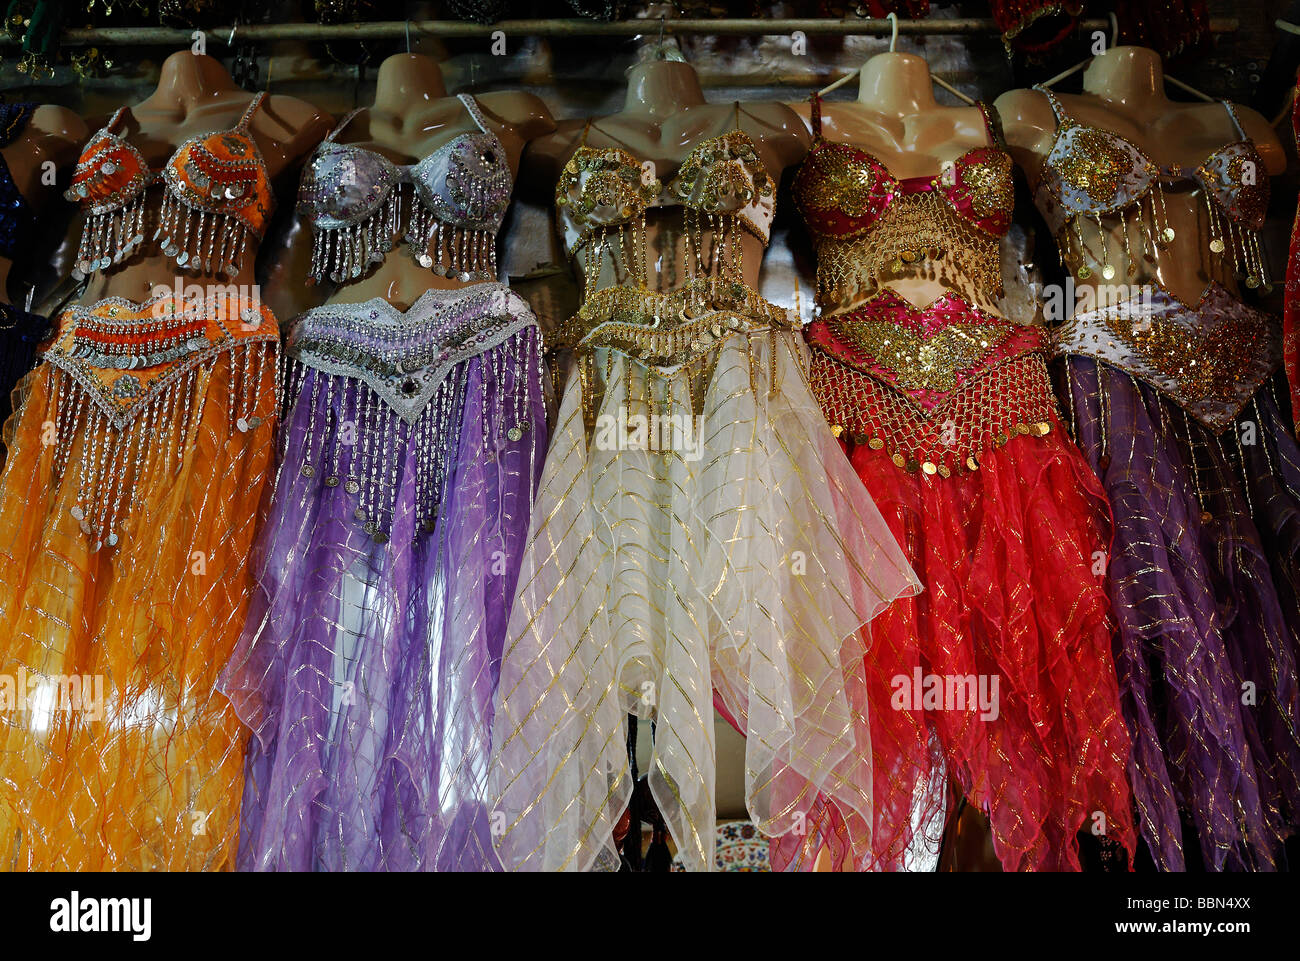 Manichini senza capi con abiti tradizionali per la danza del ventre, il Bazaar Egiziano e il Bazar delle Spezie, Eminoenue, Istanbul, Turchia Foto Stock